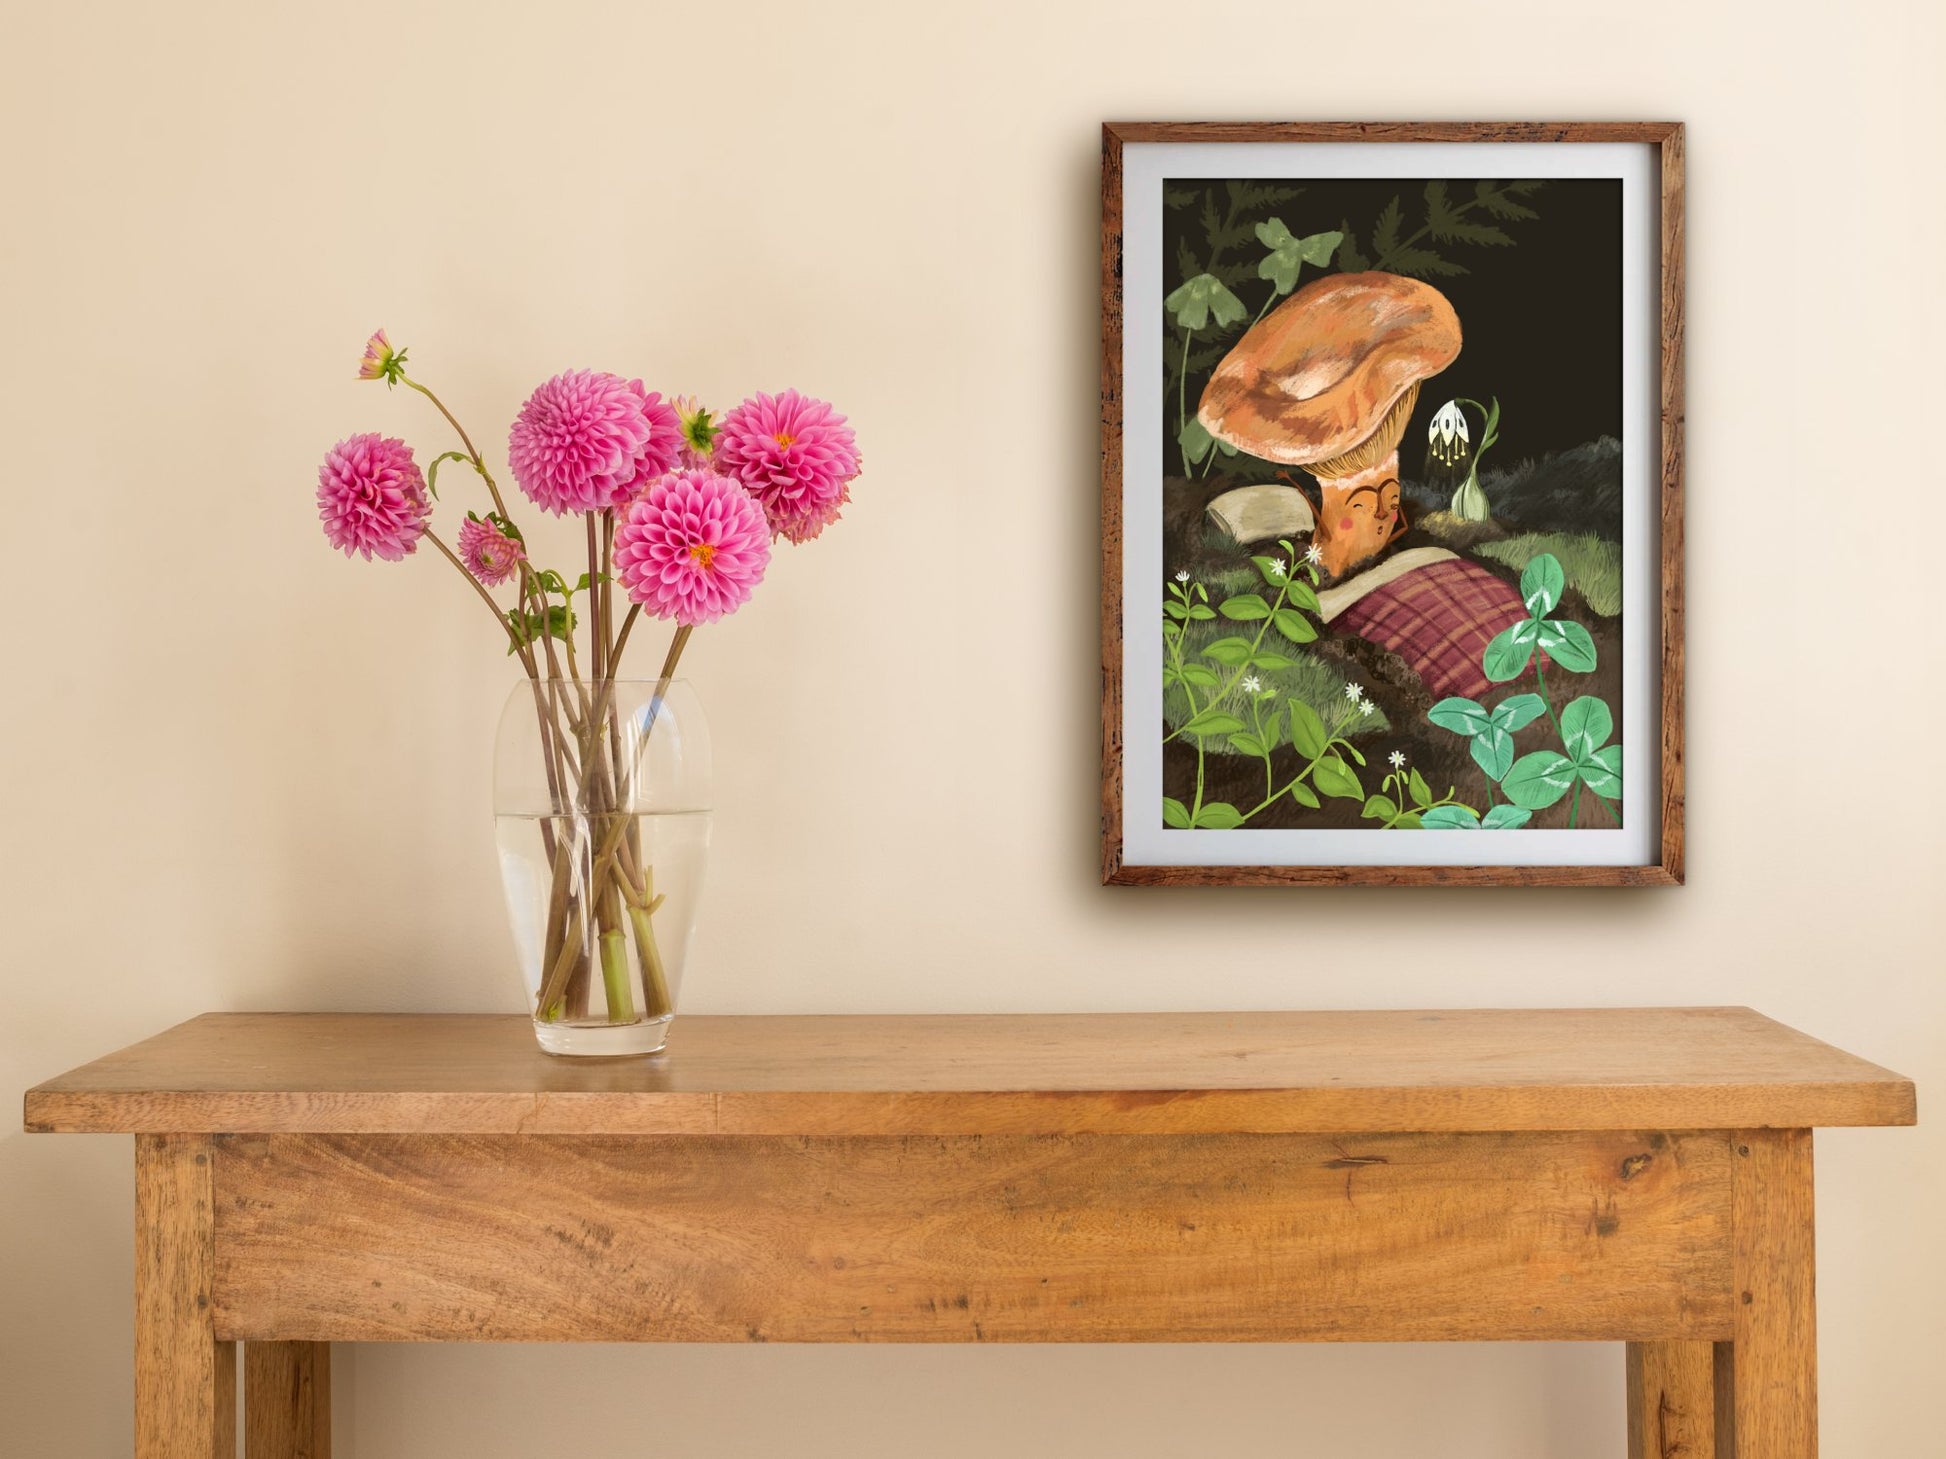 Anna Seed Art | Art Print - Sleepy Mushroom - Whimsical illustration, wall art